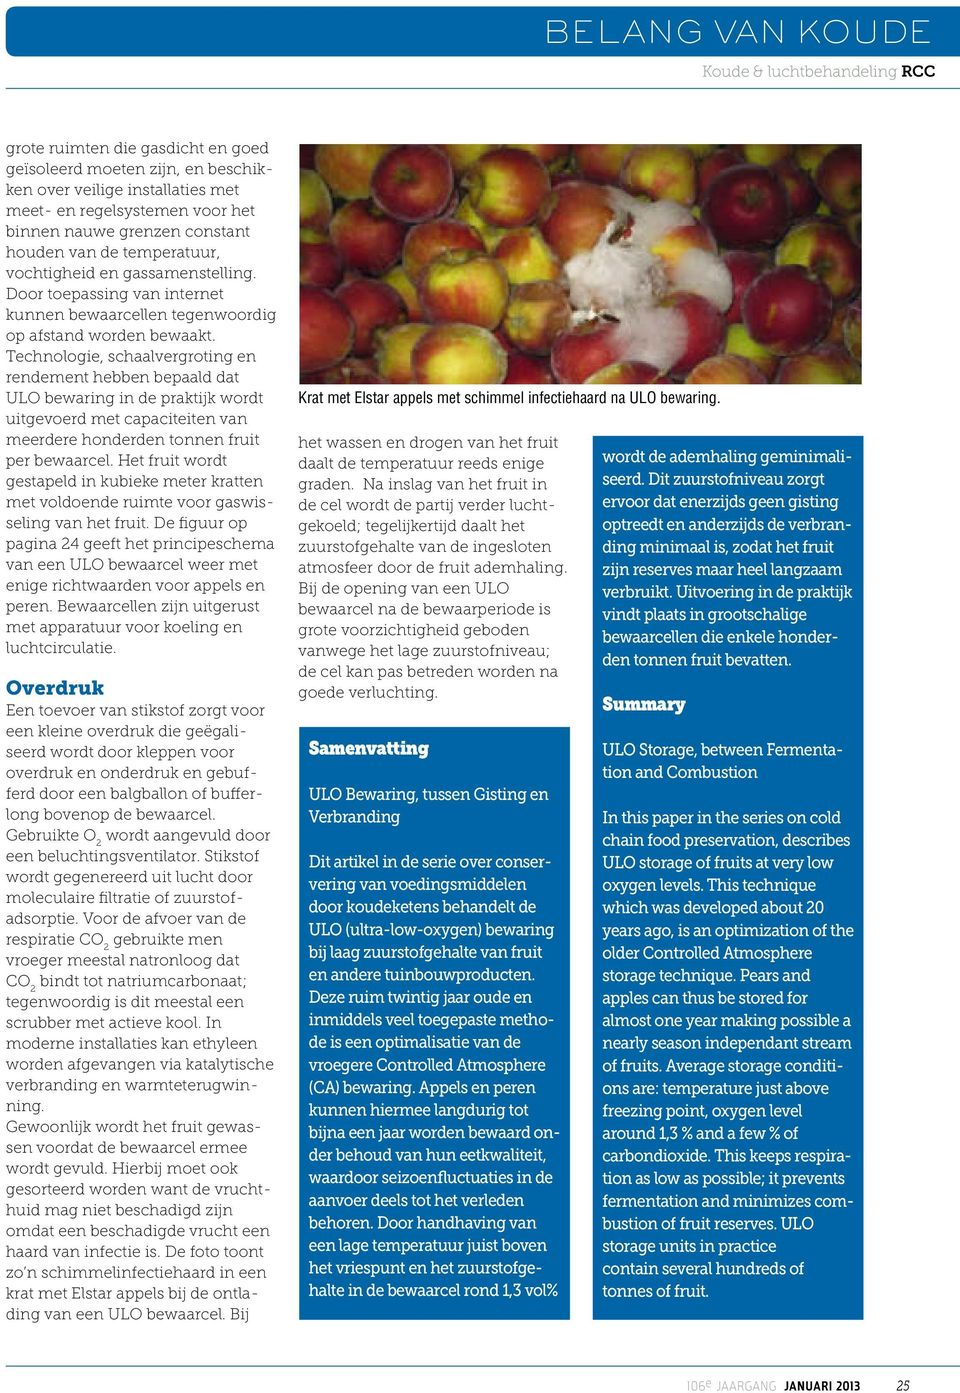 Technologie, schaalvergroting en rendement hebben bepaald dat ULO bewaring in de praktijk wordt uitgevoerd met capaciteiten van meerdere honderden tonnen fruit per bewaarcel.